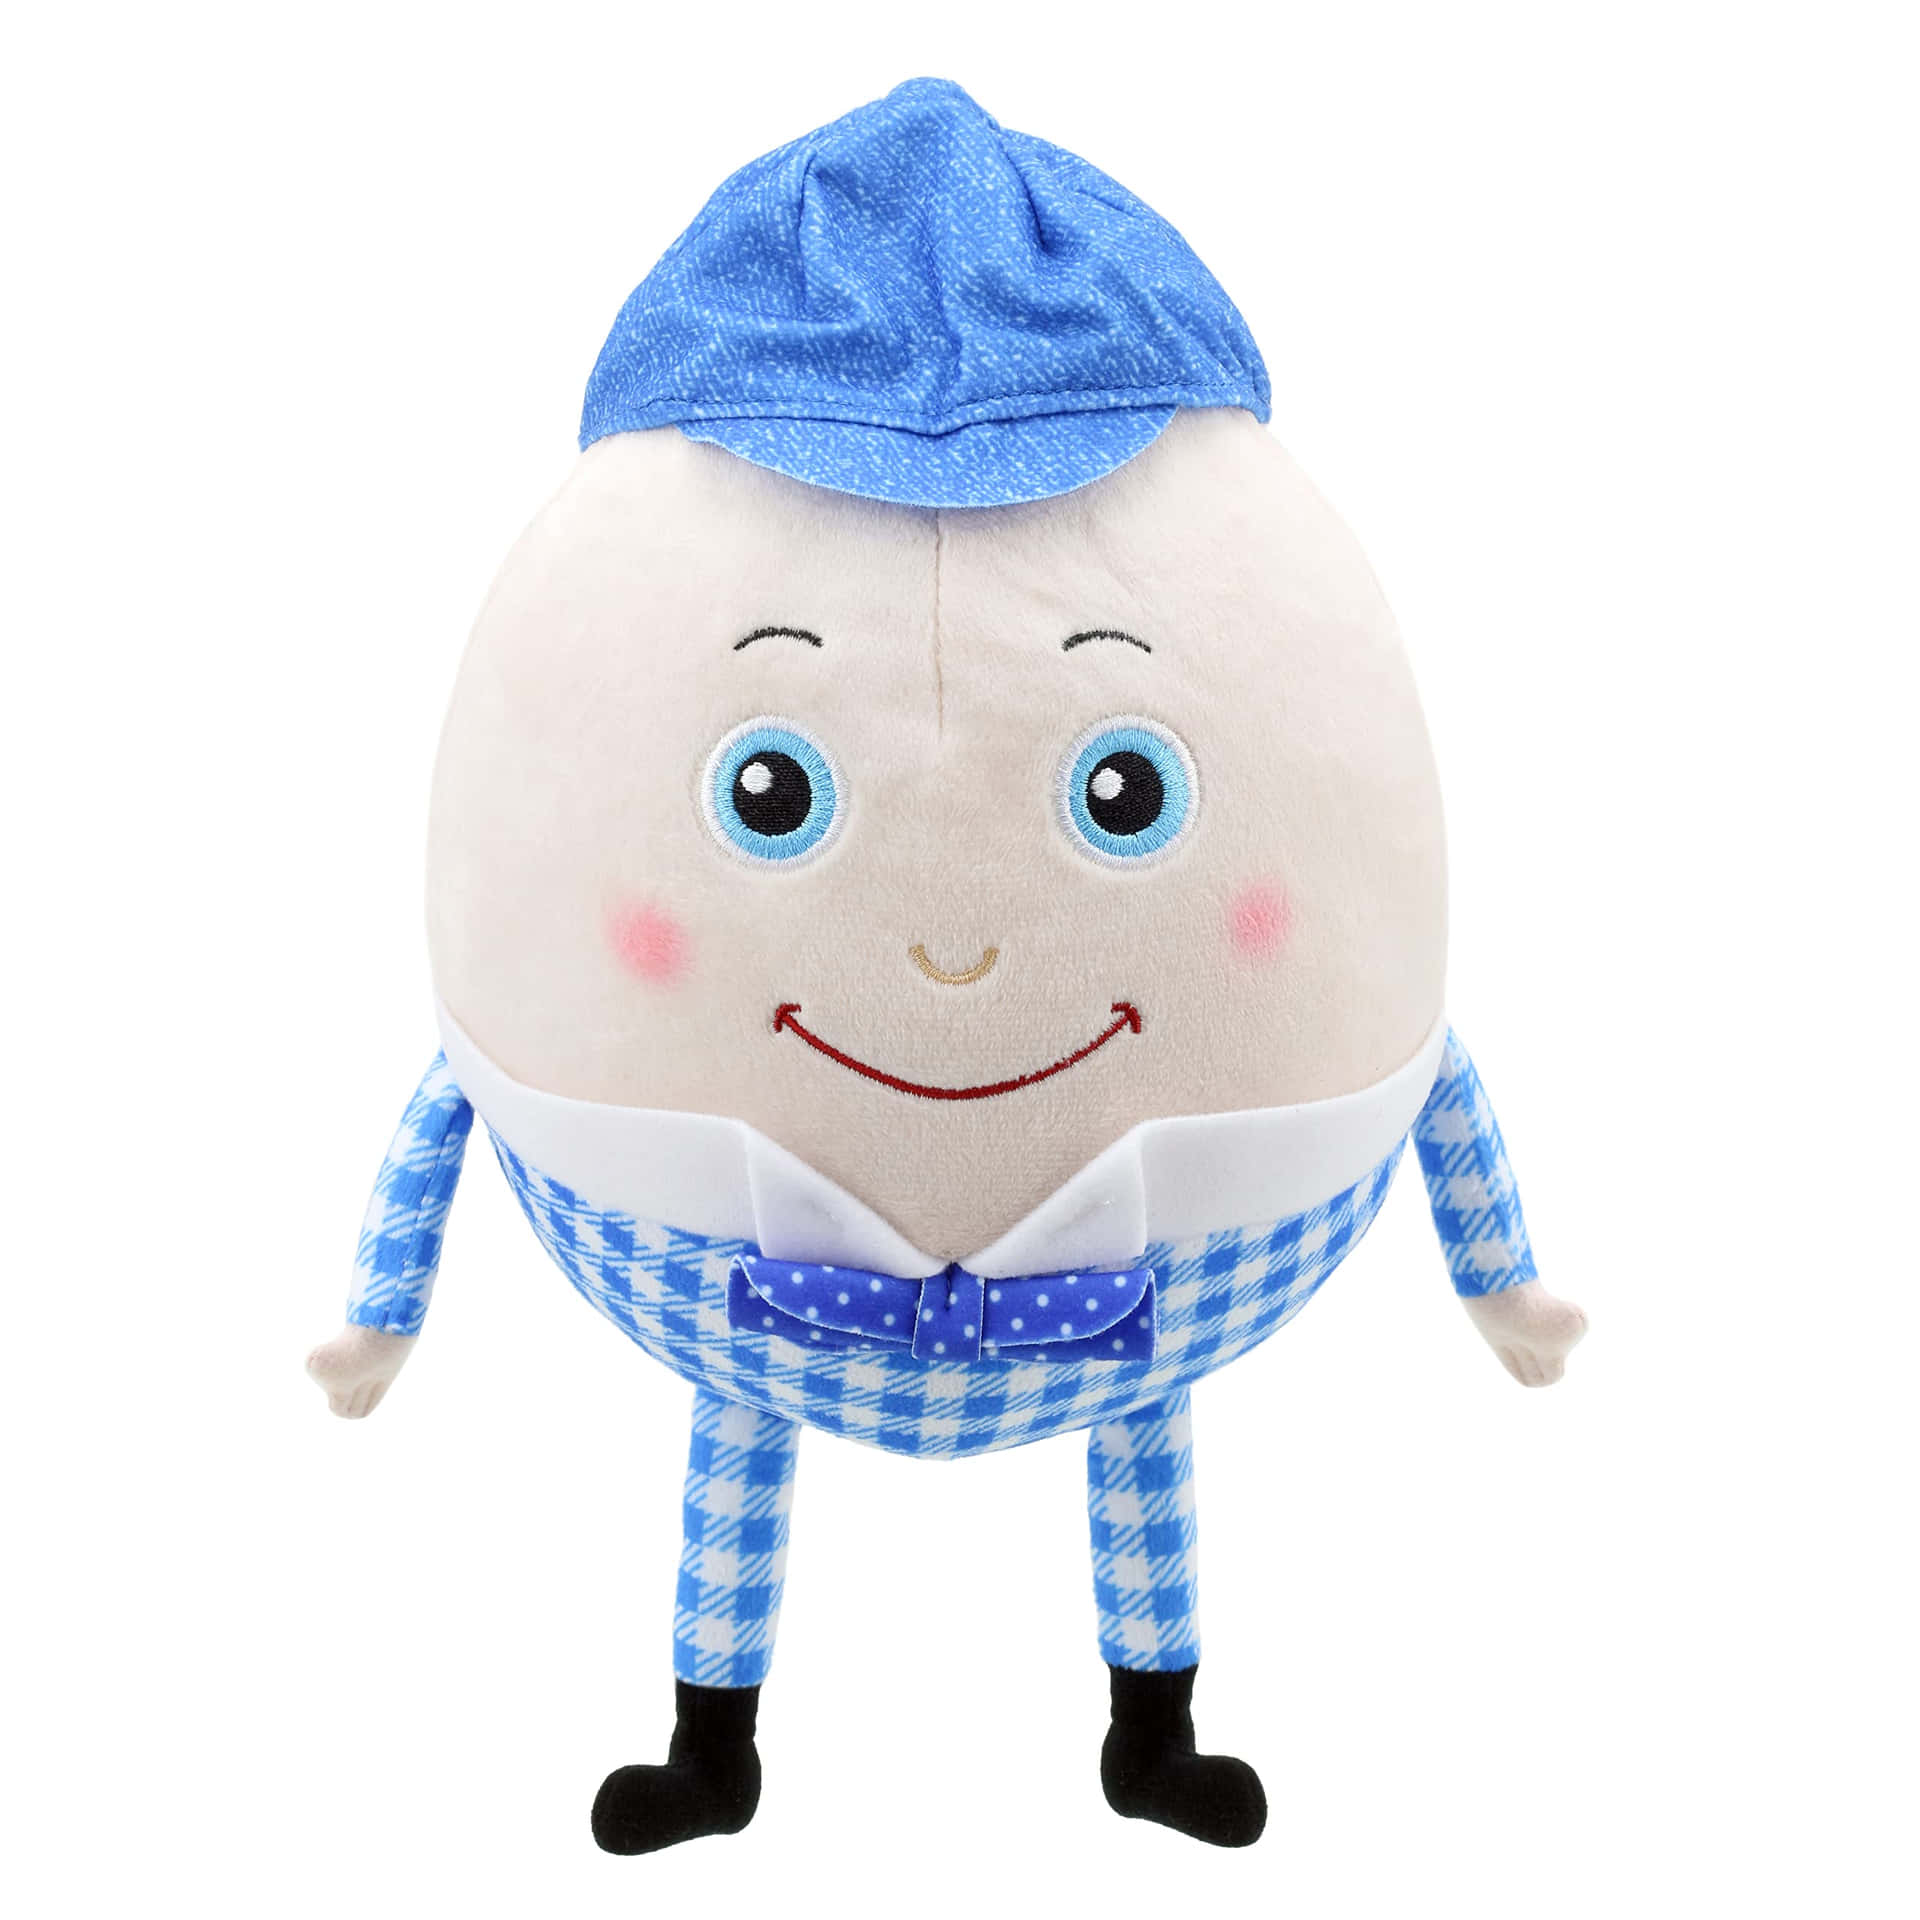 Humpty Dumpty Wearing Blue Hat Picture